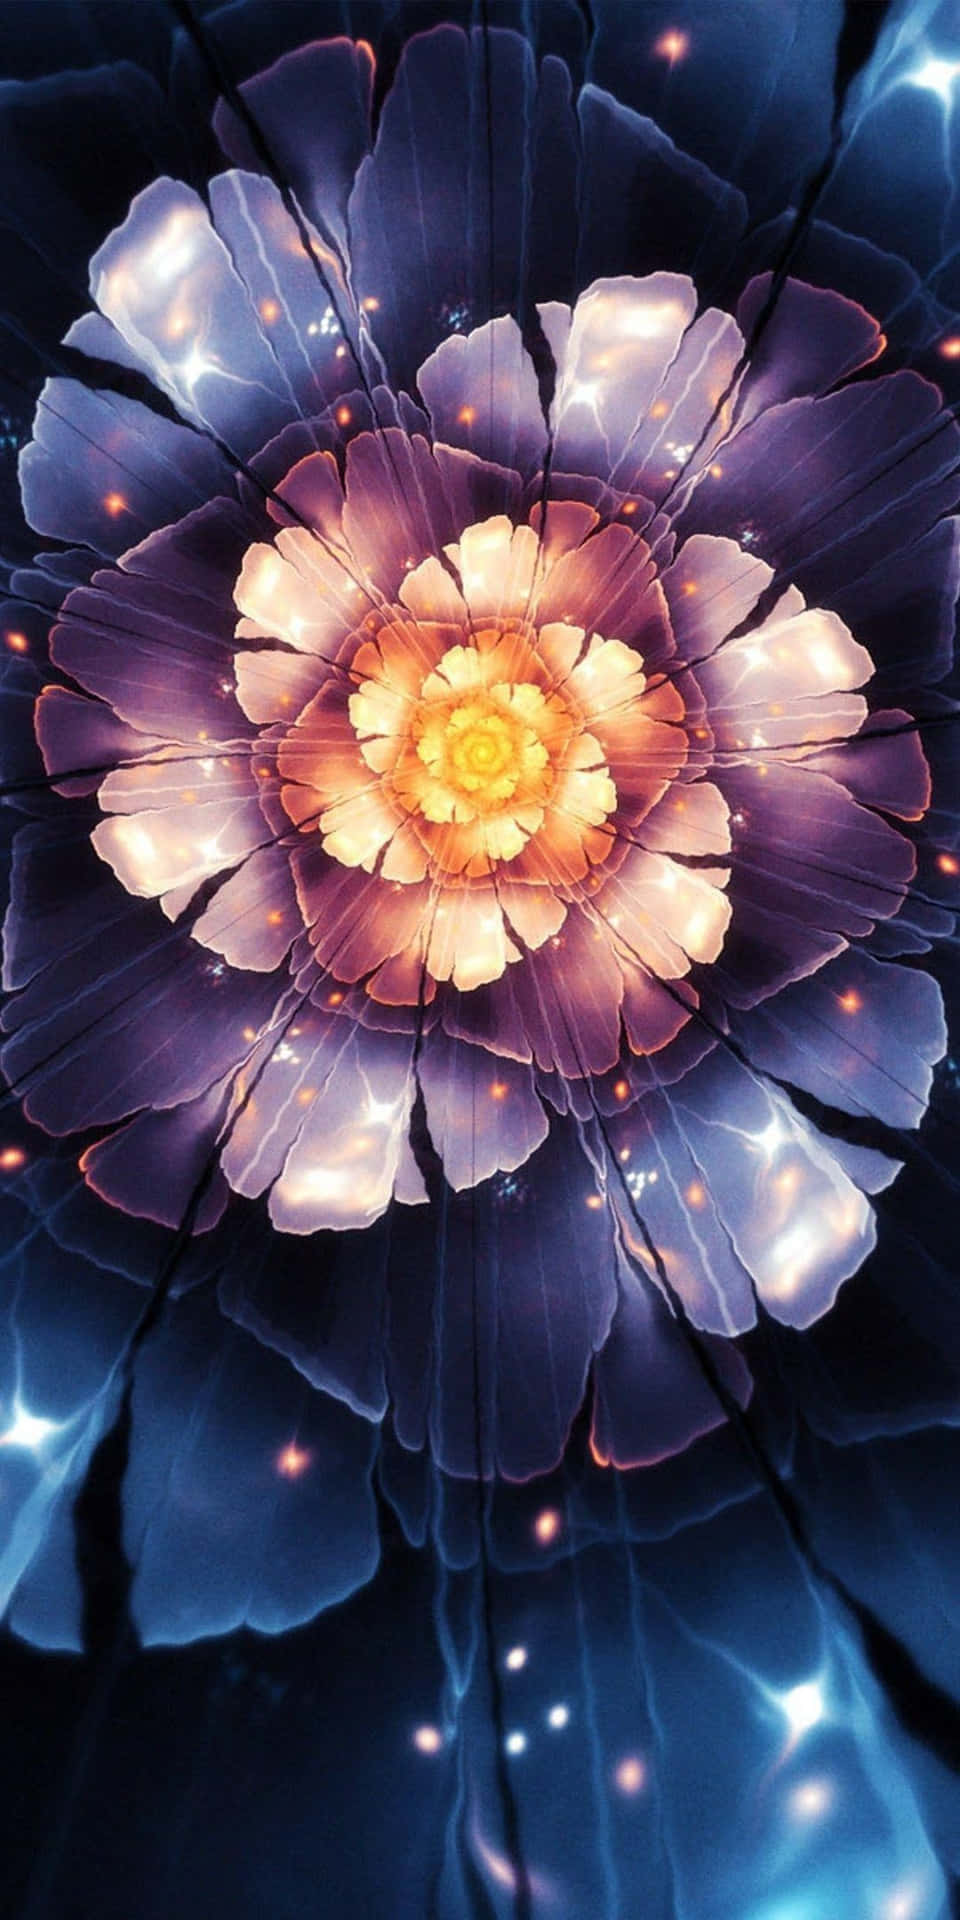 Mesmerizing 3D Flower in Full Bloom Wallpaper